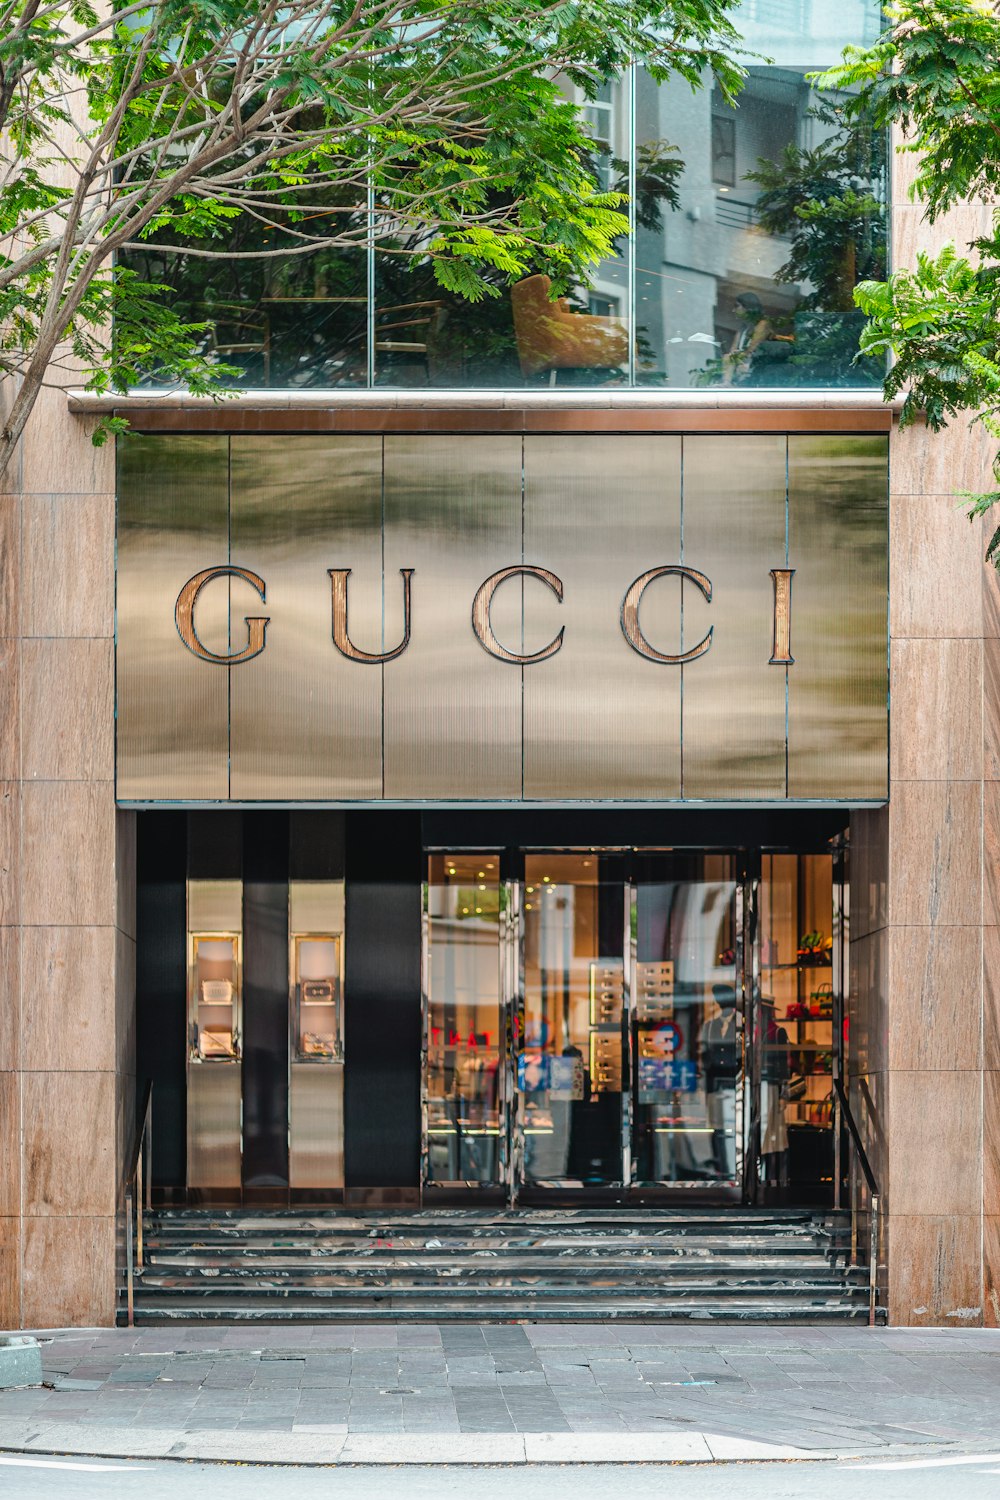 Foto La entrada a una tienda Gucci en una ciudad – Imagen Gucci gratis en  Unsplash